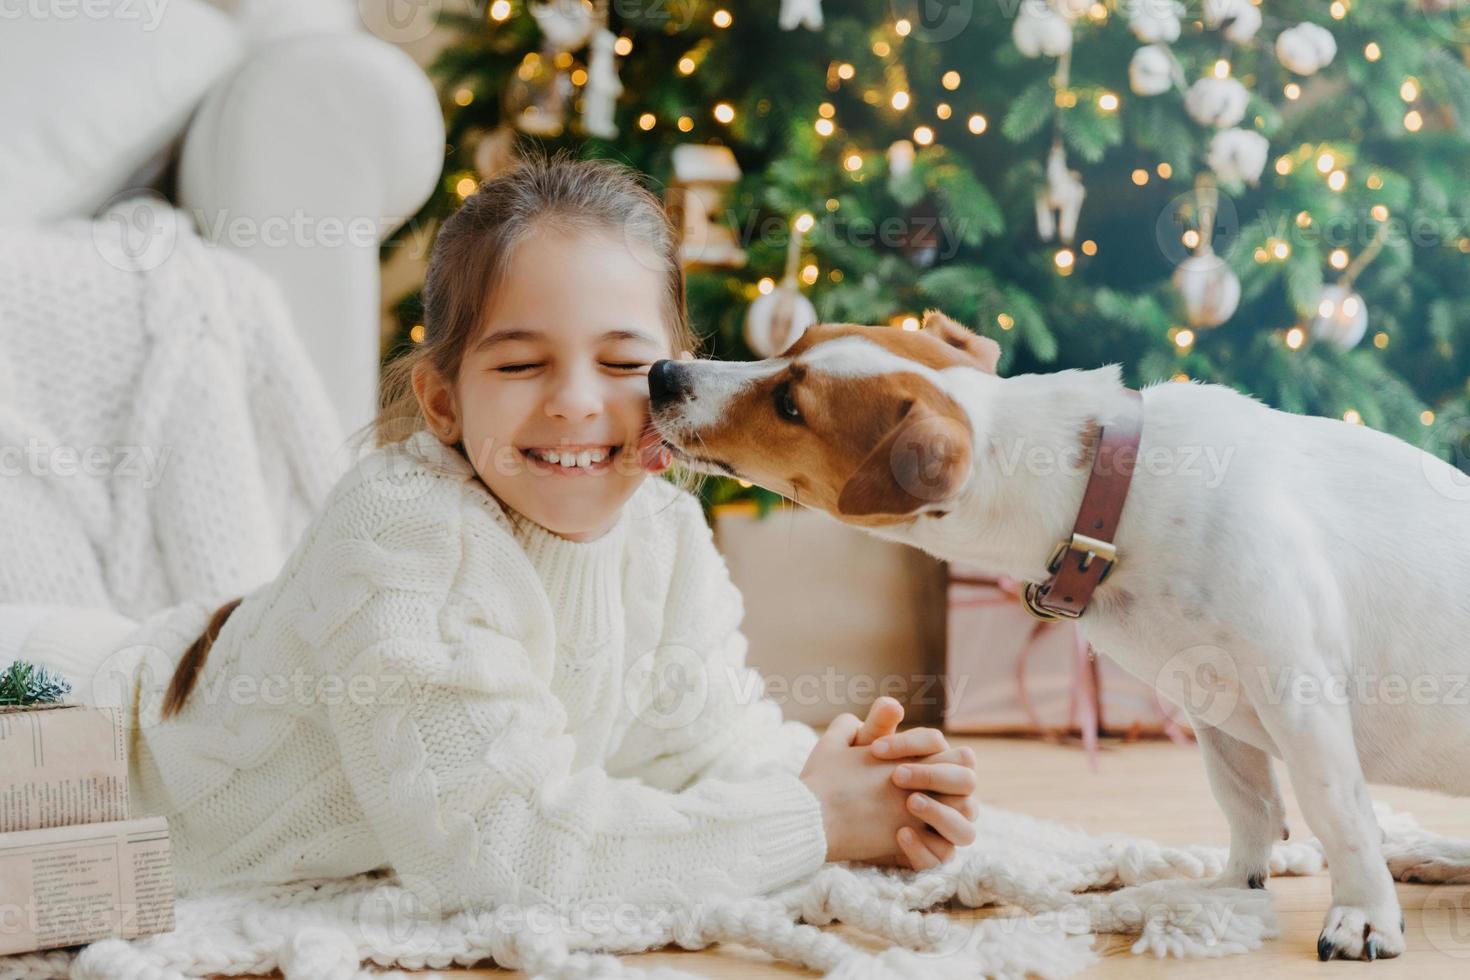 mooie puppy likt chillds gezicht veel plezier samen poseren op de vloer in een gezellige kamer tegen versierde dennenboom, huidige dozen. gelukkig nieuwjaarsconcept. begin van de wintervakantie. kerstvoorbereiding foto